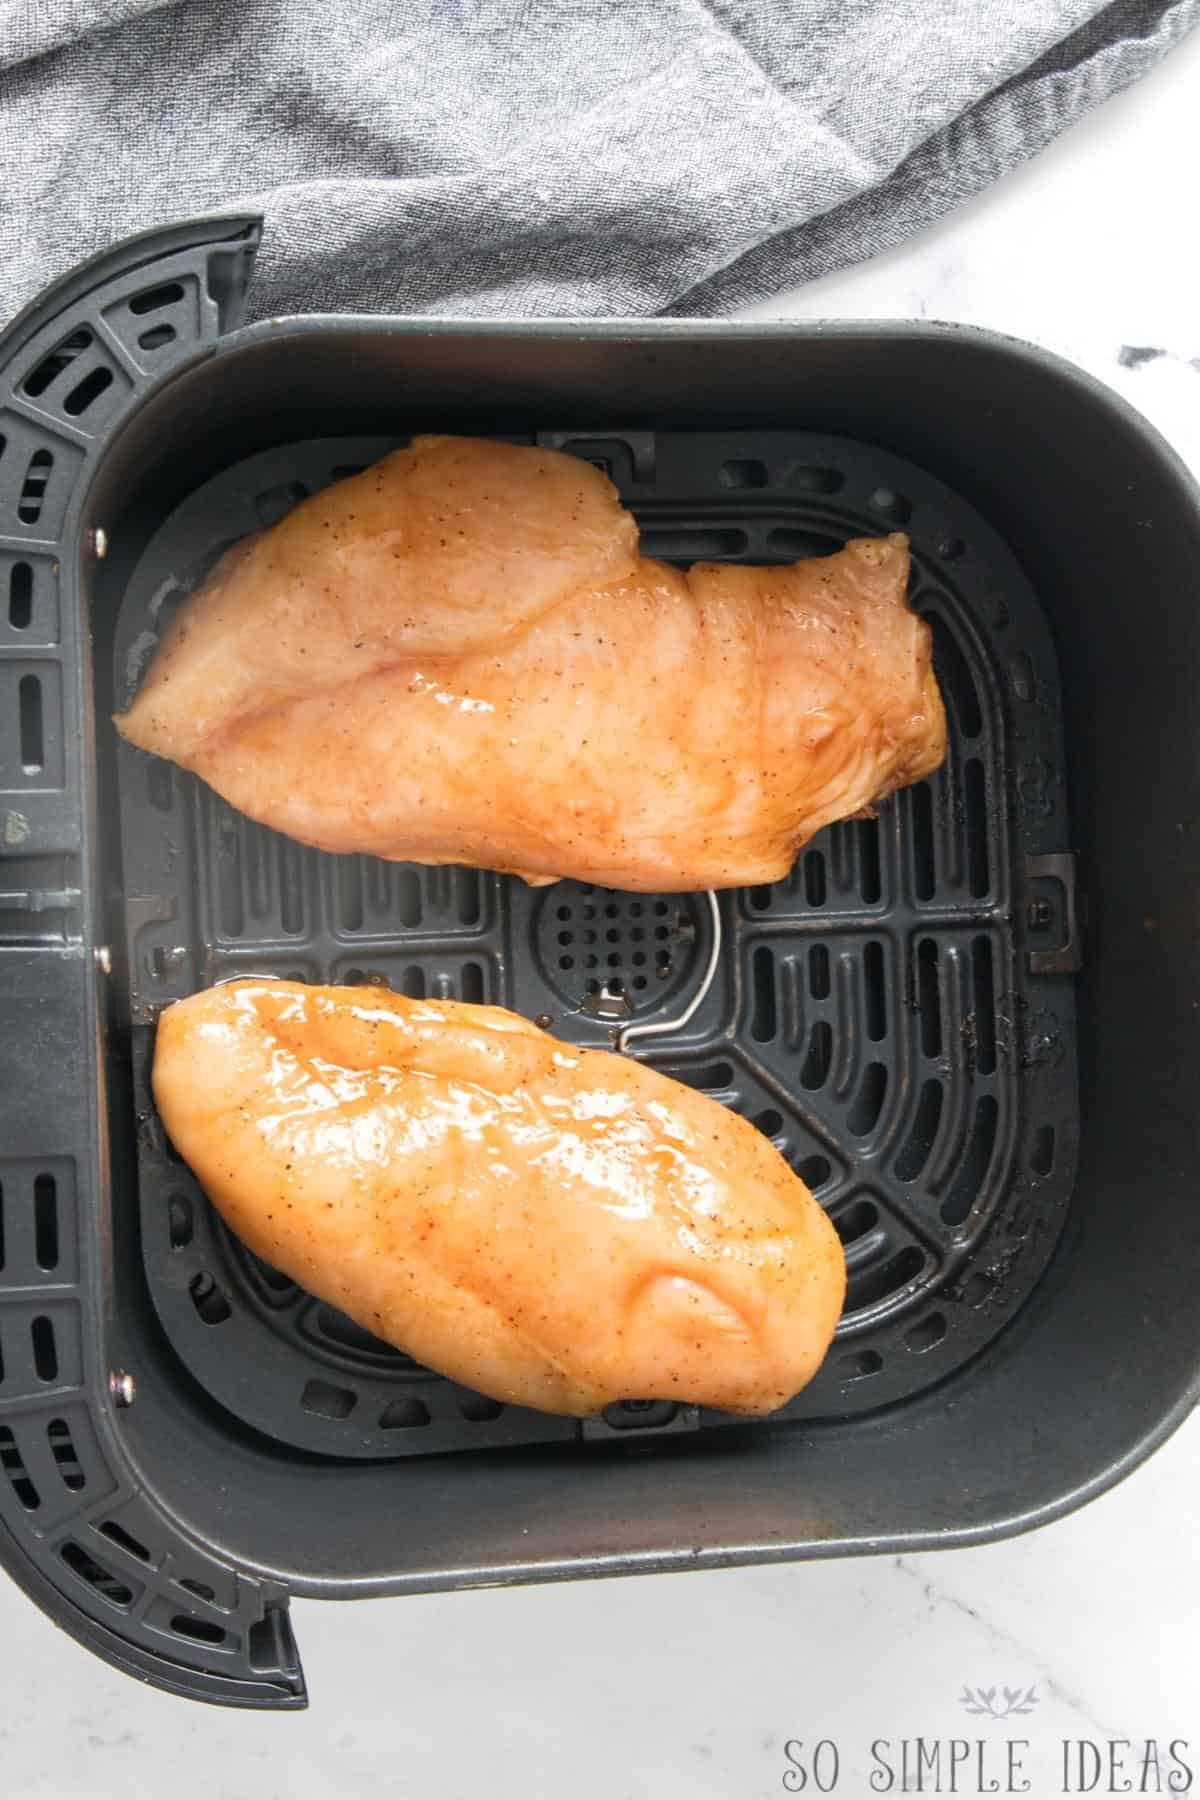 marinated chicken breasts in air fryer basket.